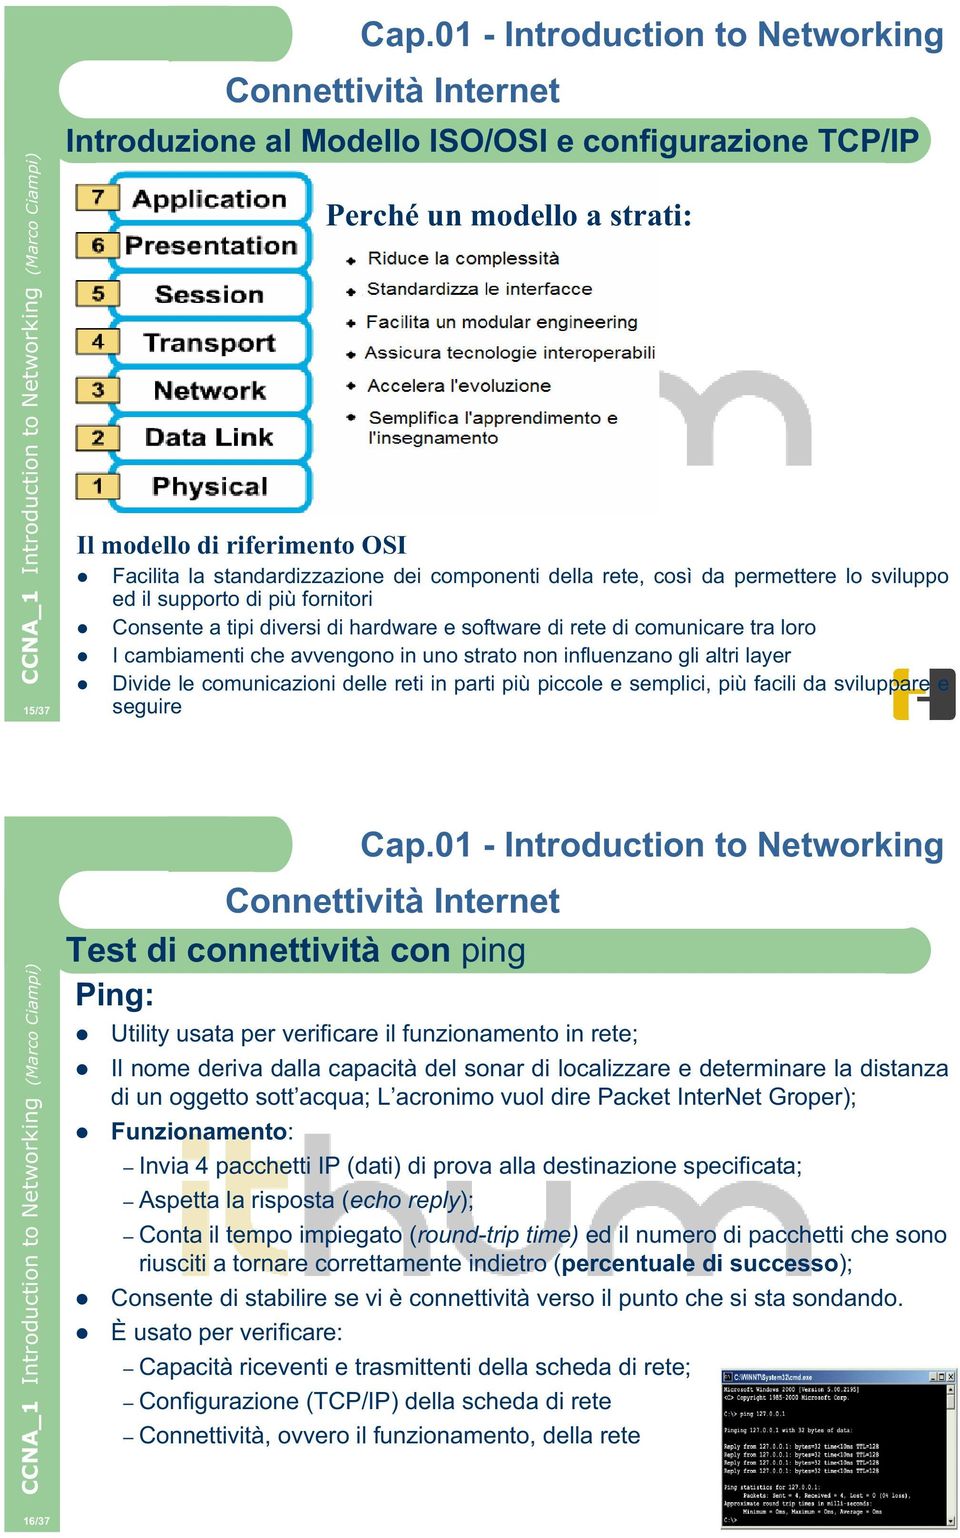 le comunicazioni delle reti in parti più piccole e semplici, più facili da sviluppare e seguire Test di connettività con ping Ping: Utility usata per verificare il funzionamento in rete; Il nome